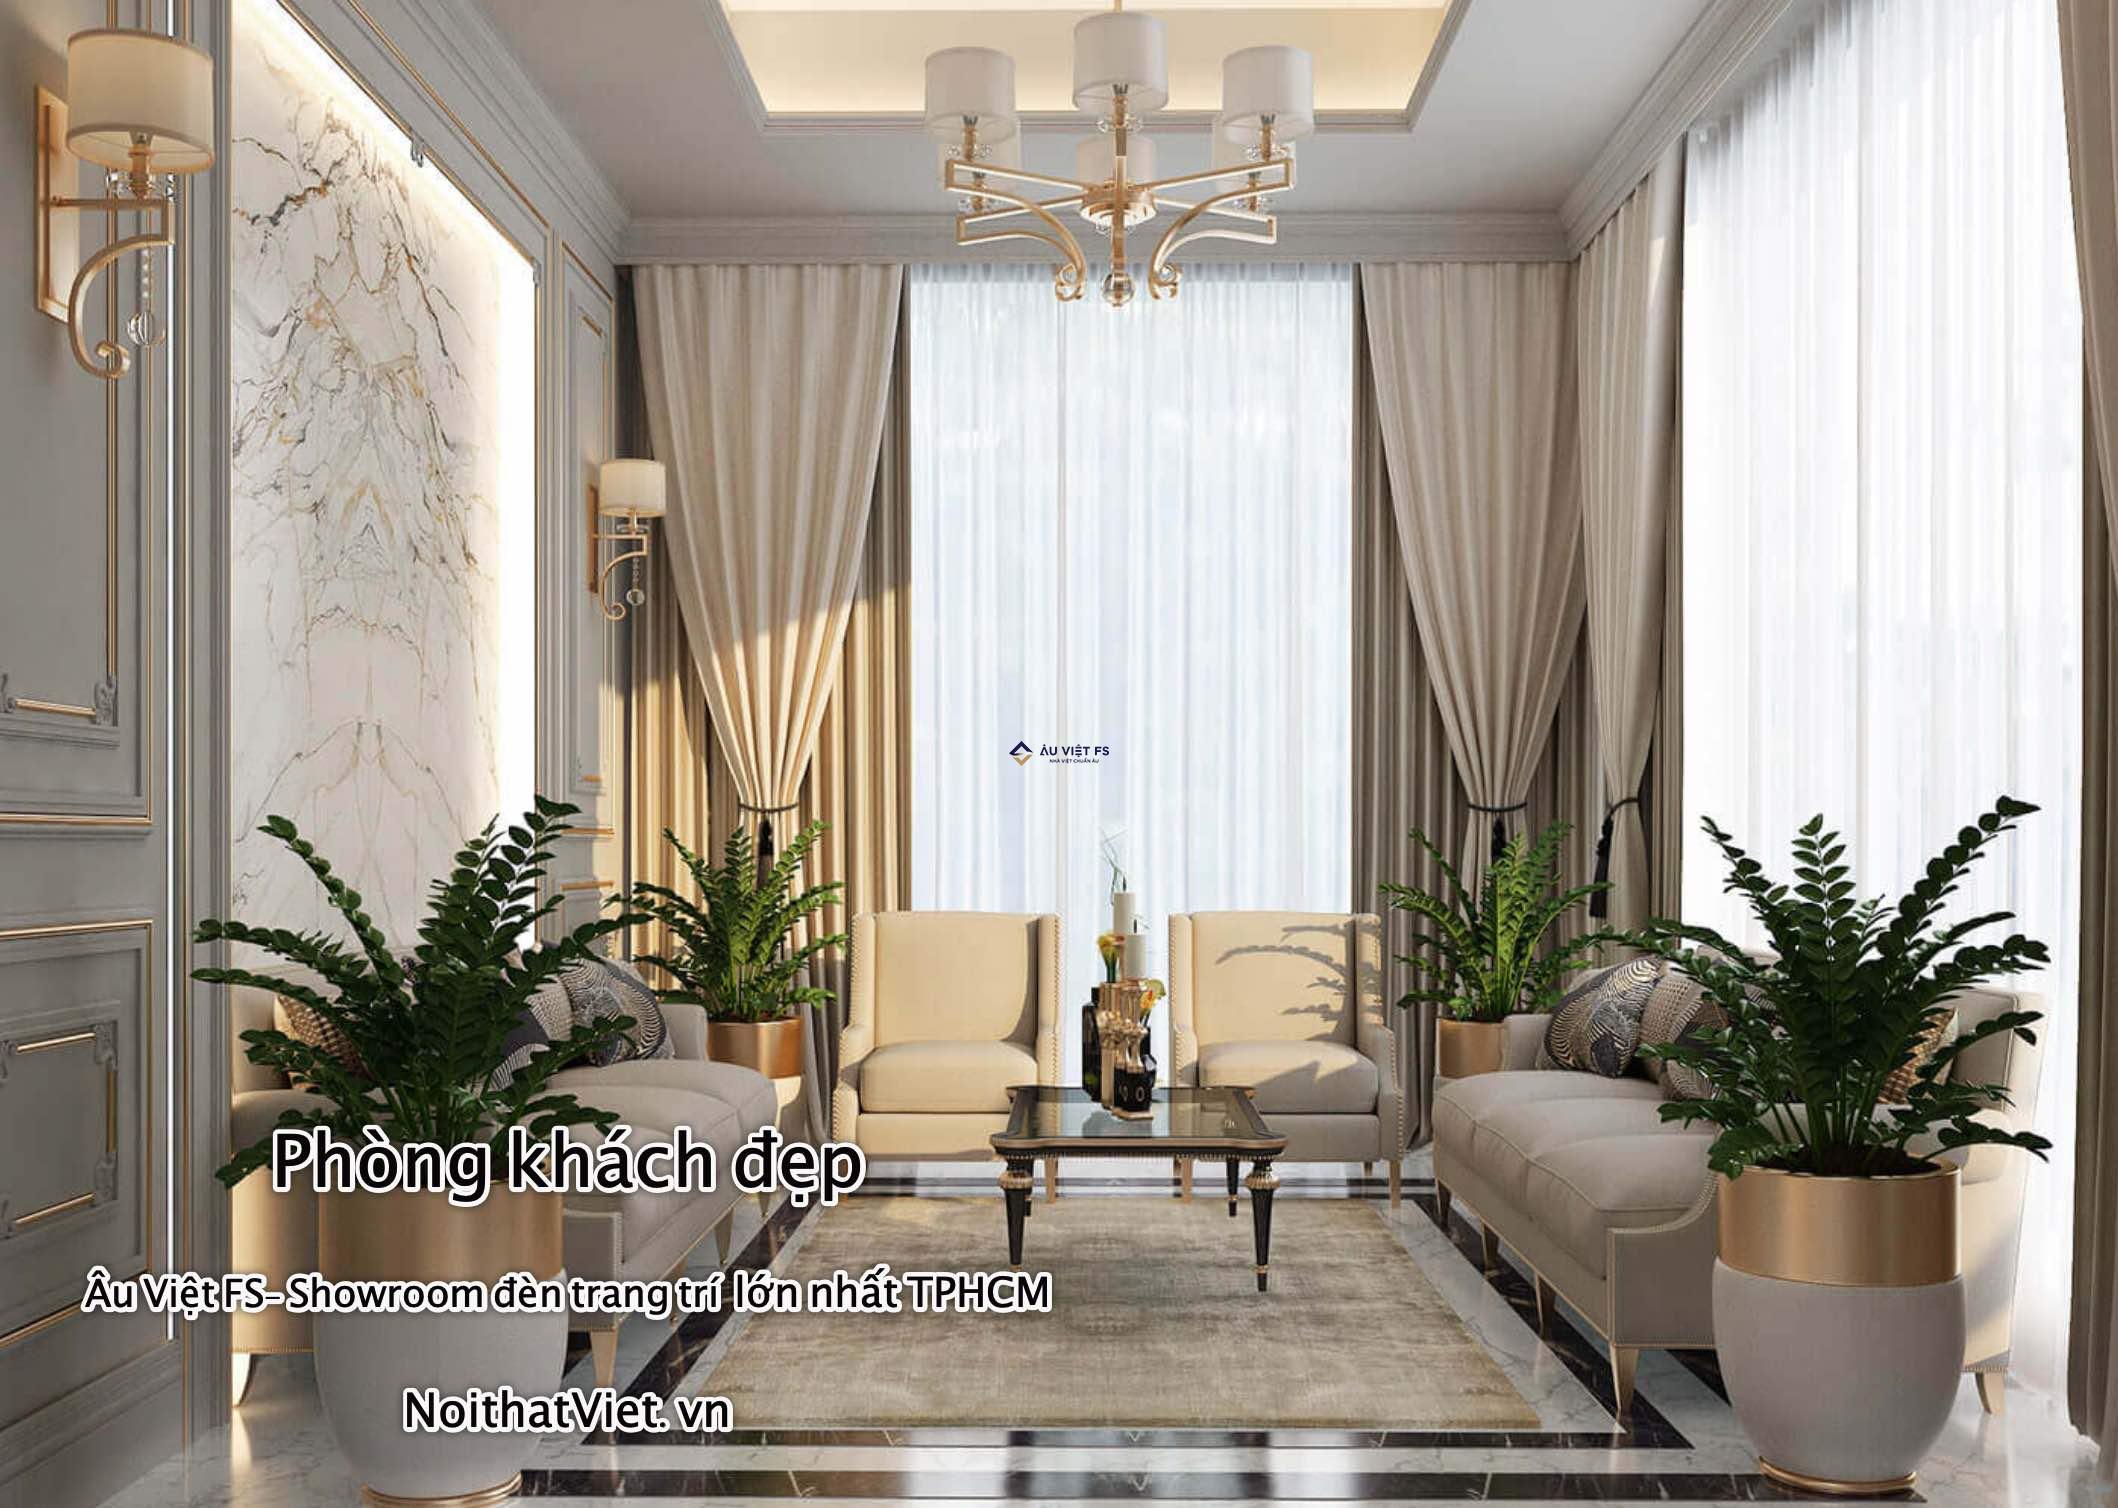 Xu hướng trang trí nội thất phòng khách đẹp năm 2022 | Tidiarc.vn